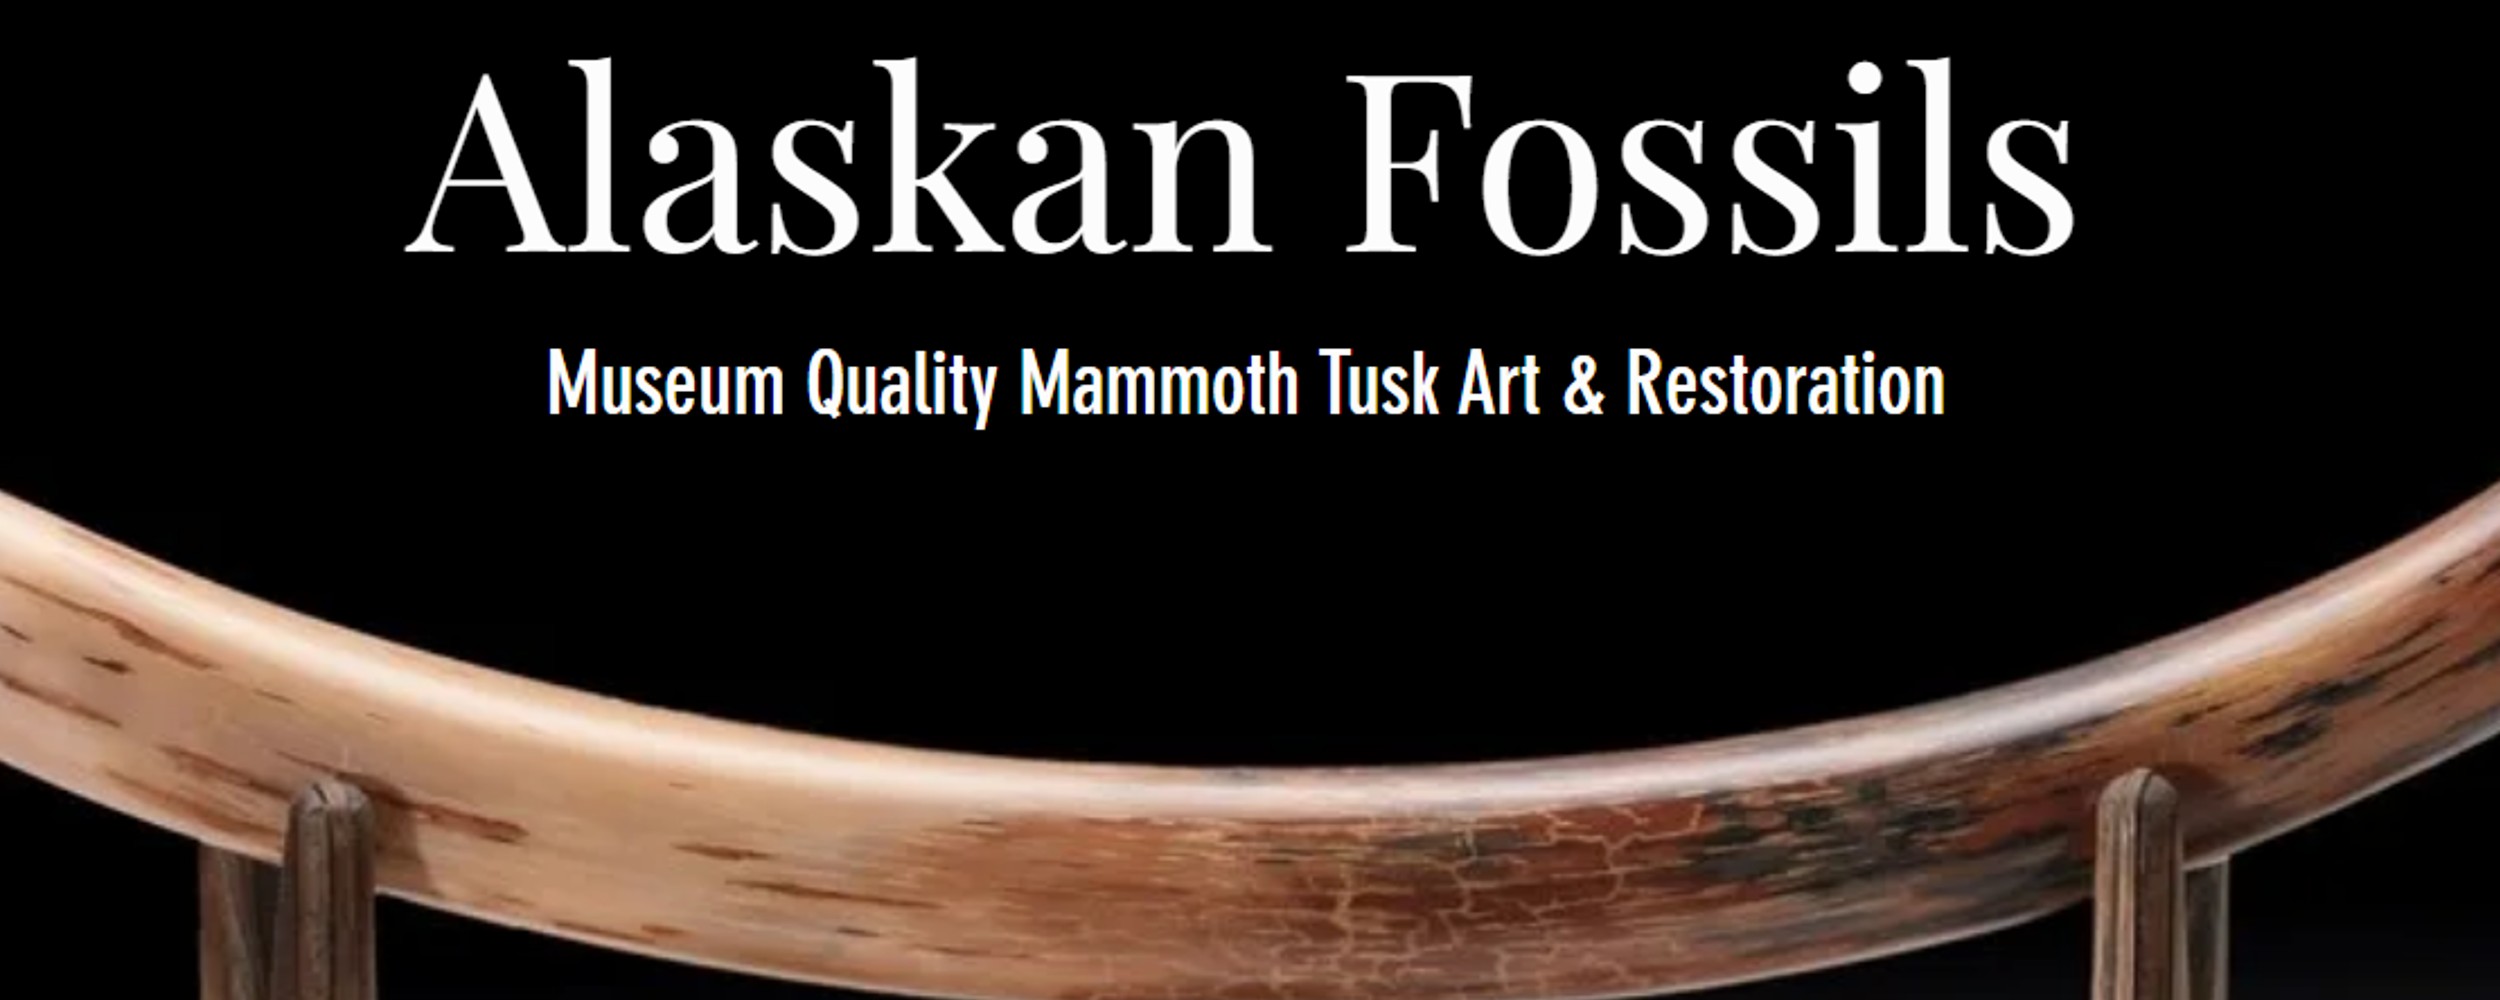 Alaskan Fossils